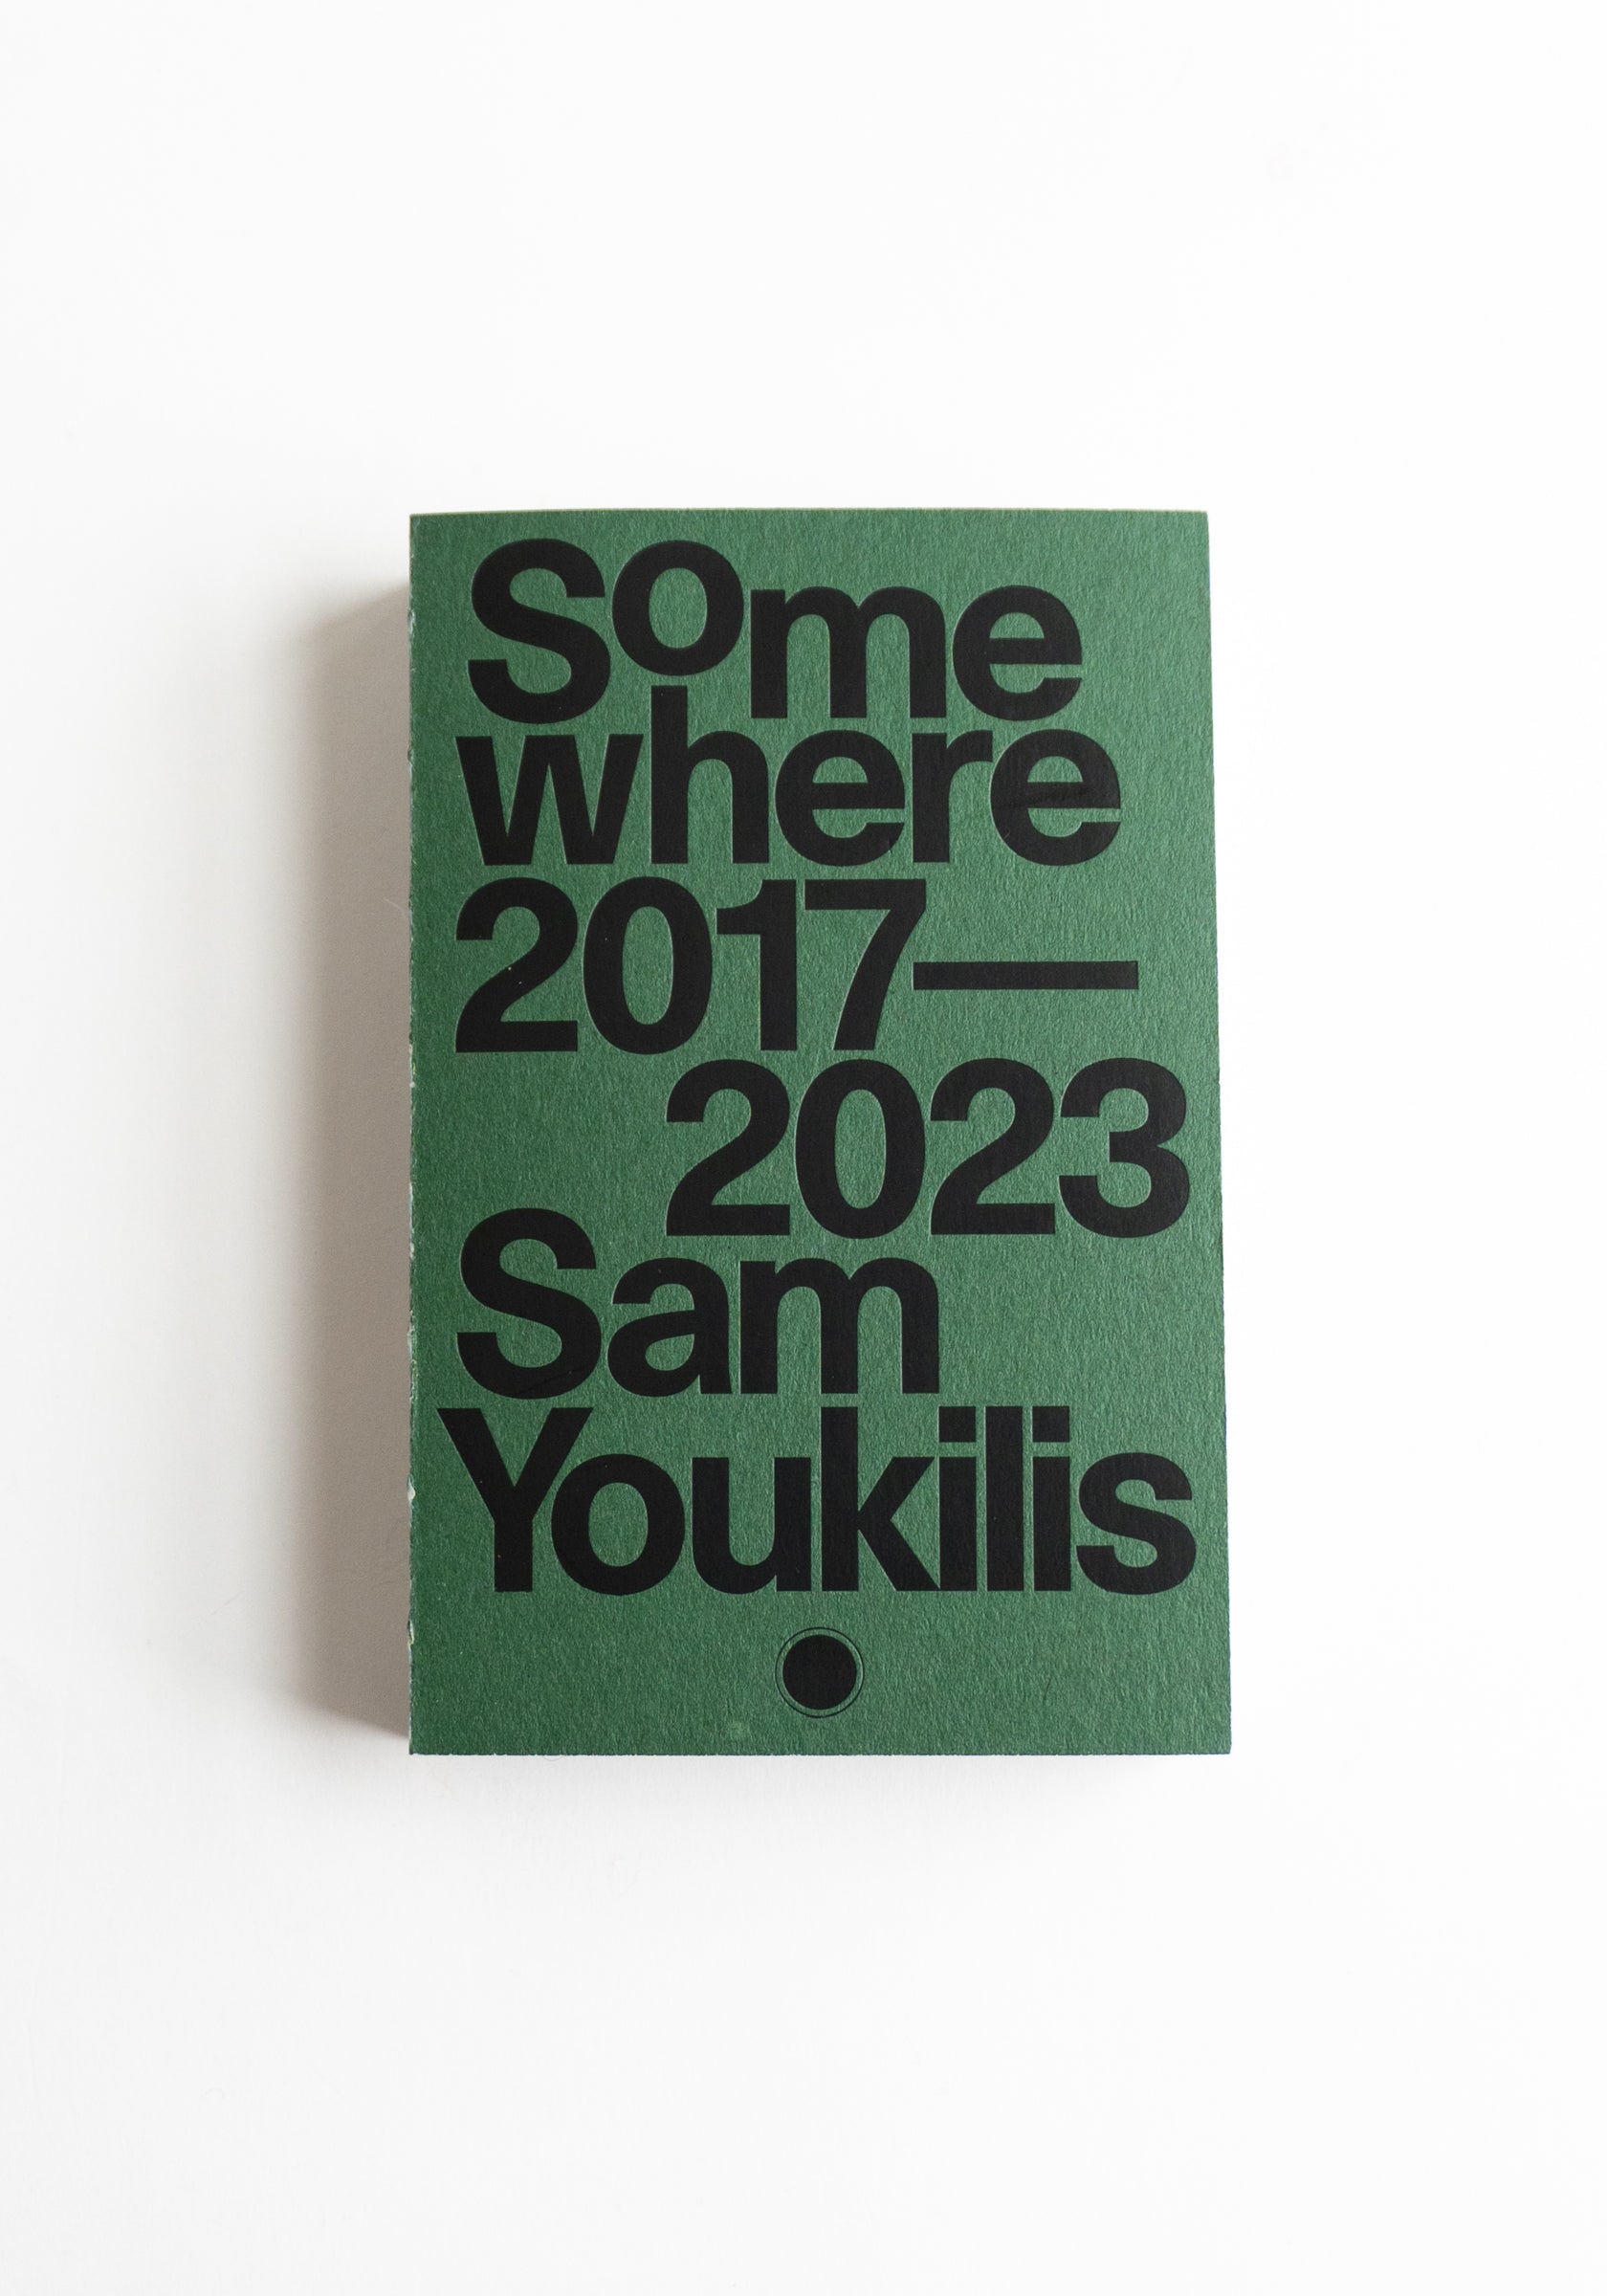 Somewhere 2017-2023 Sam Youkilis